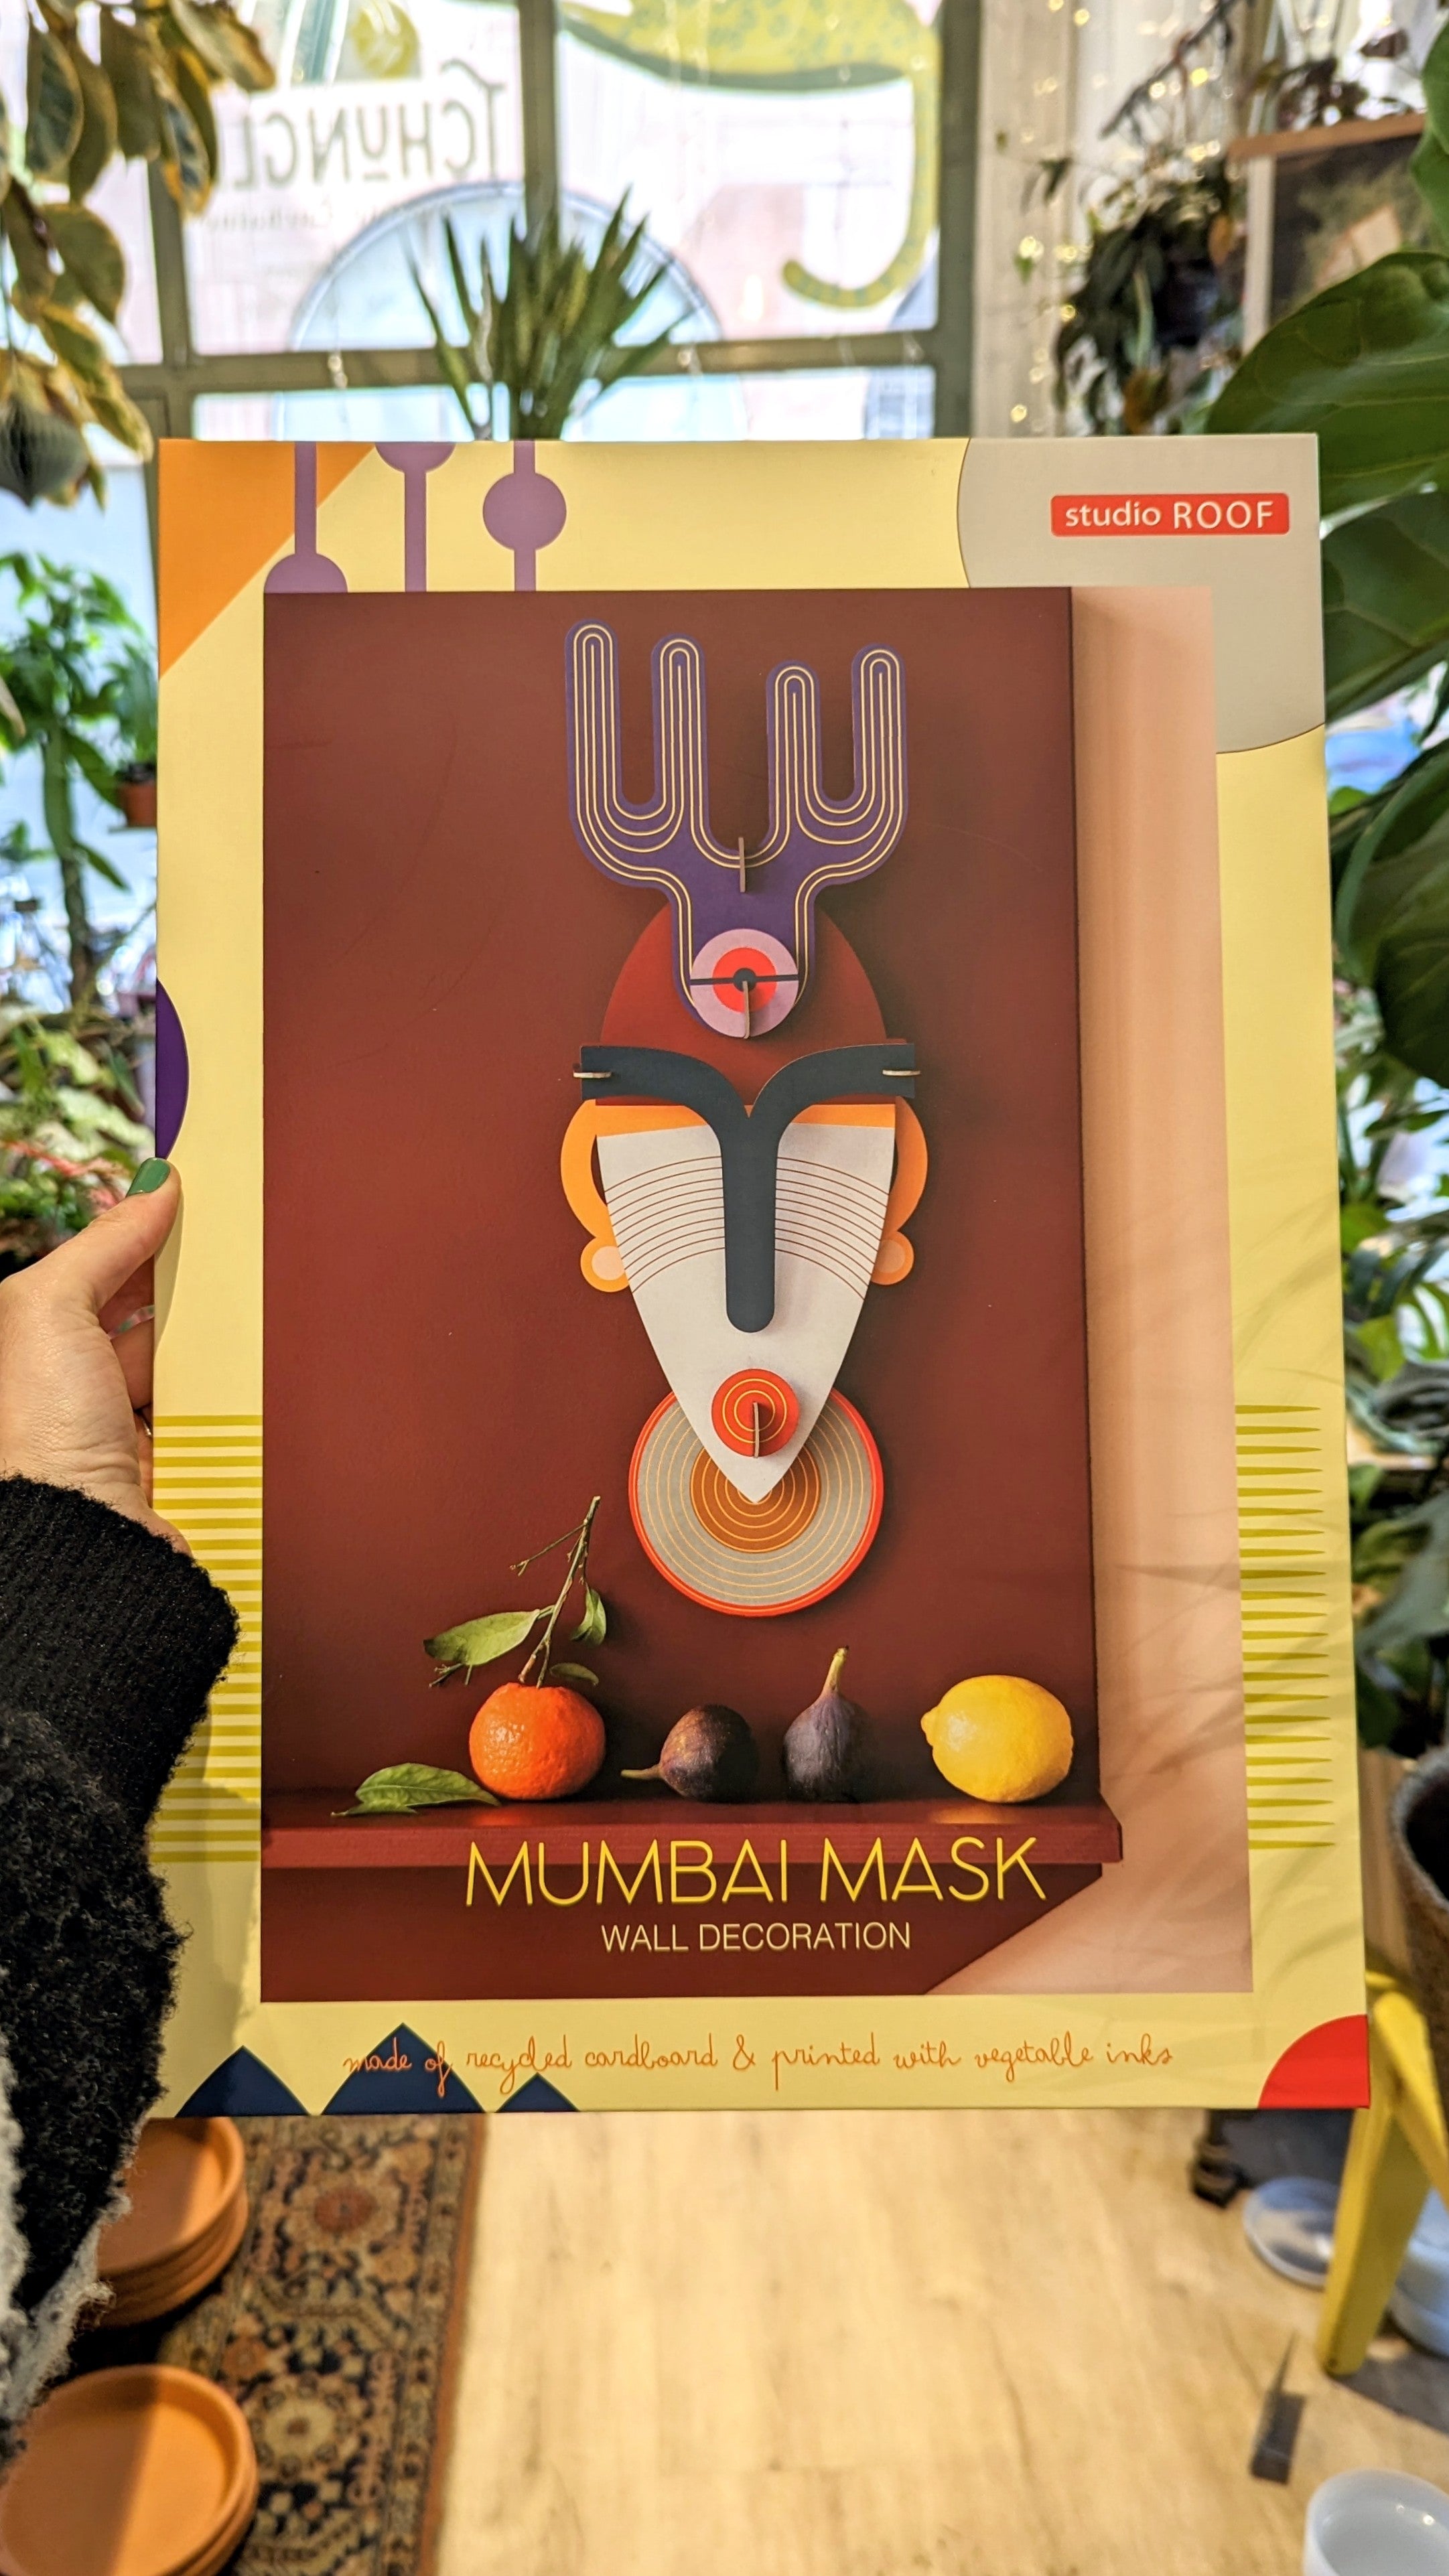 Studio ROOF | Masque Mumbai